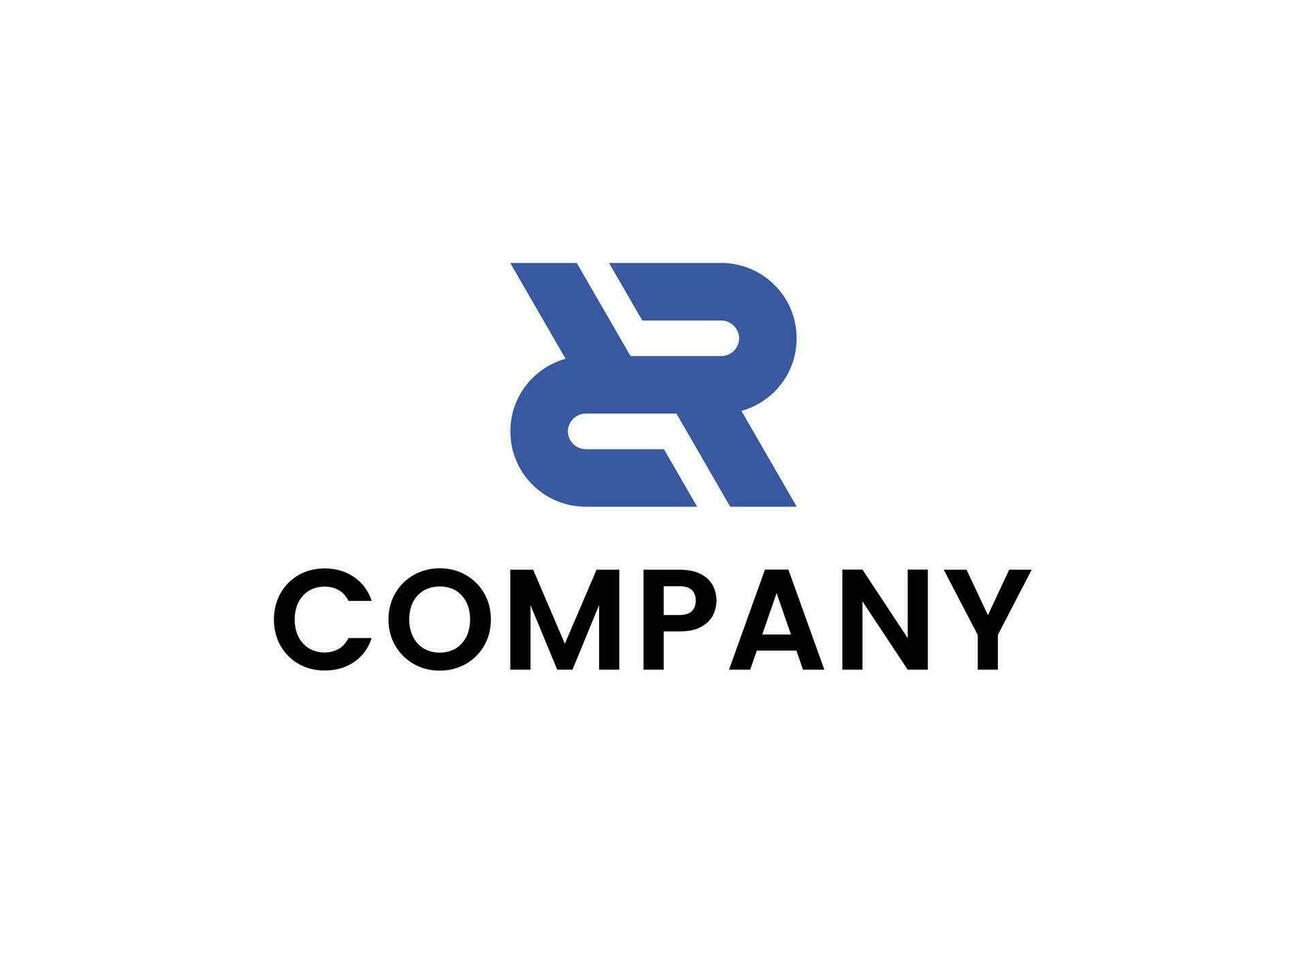 Reparatur Unternehmen mit Initiale r Logo Konzept vektor